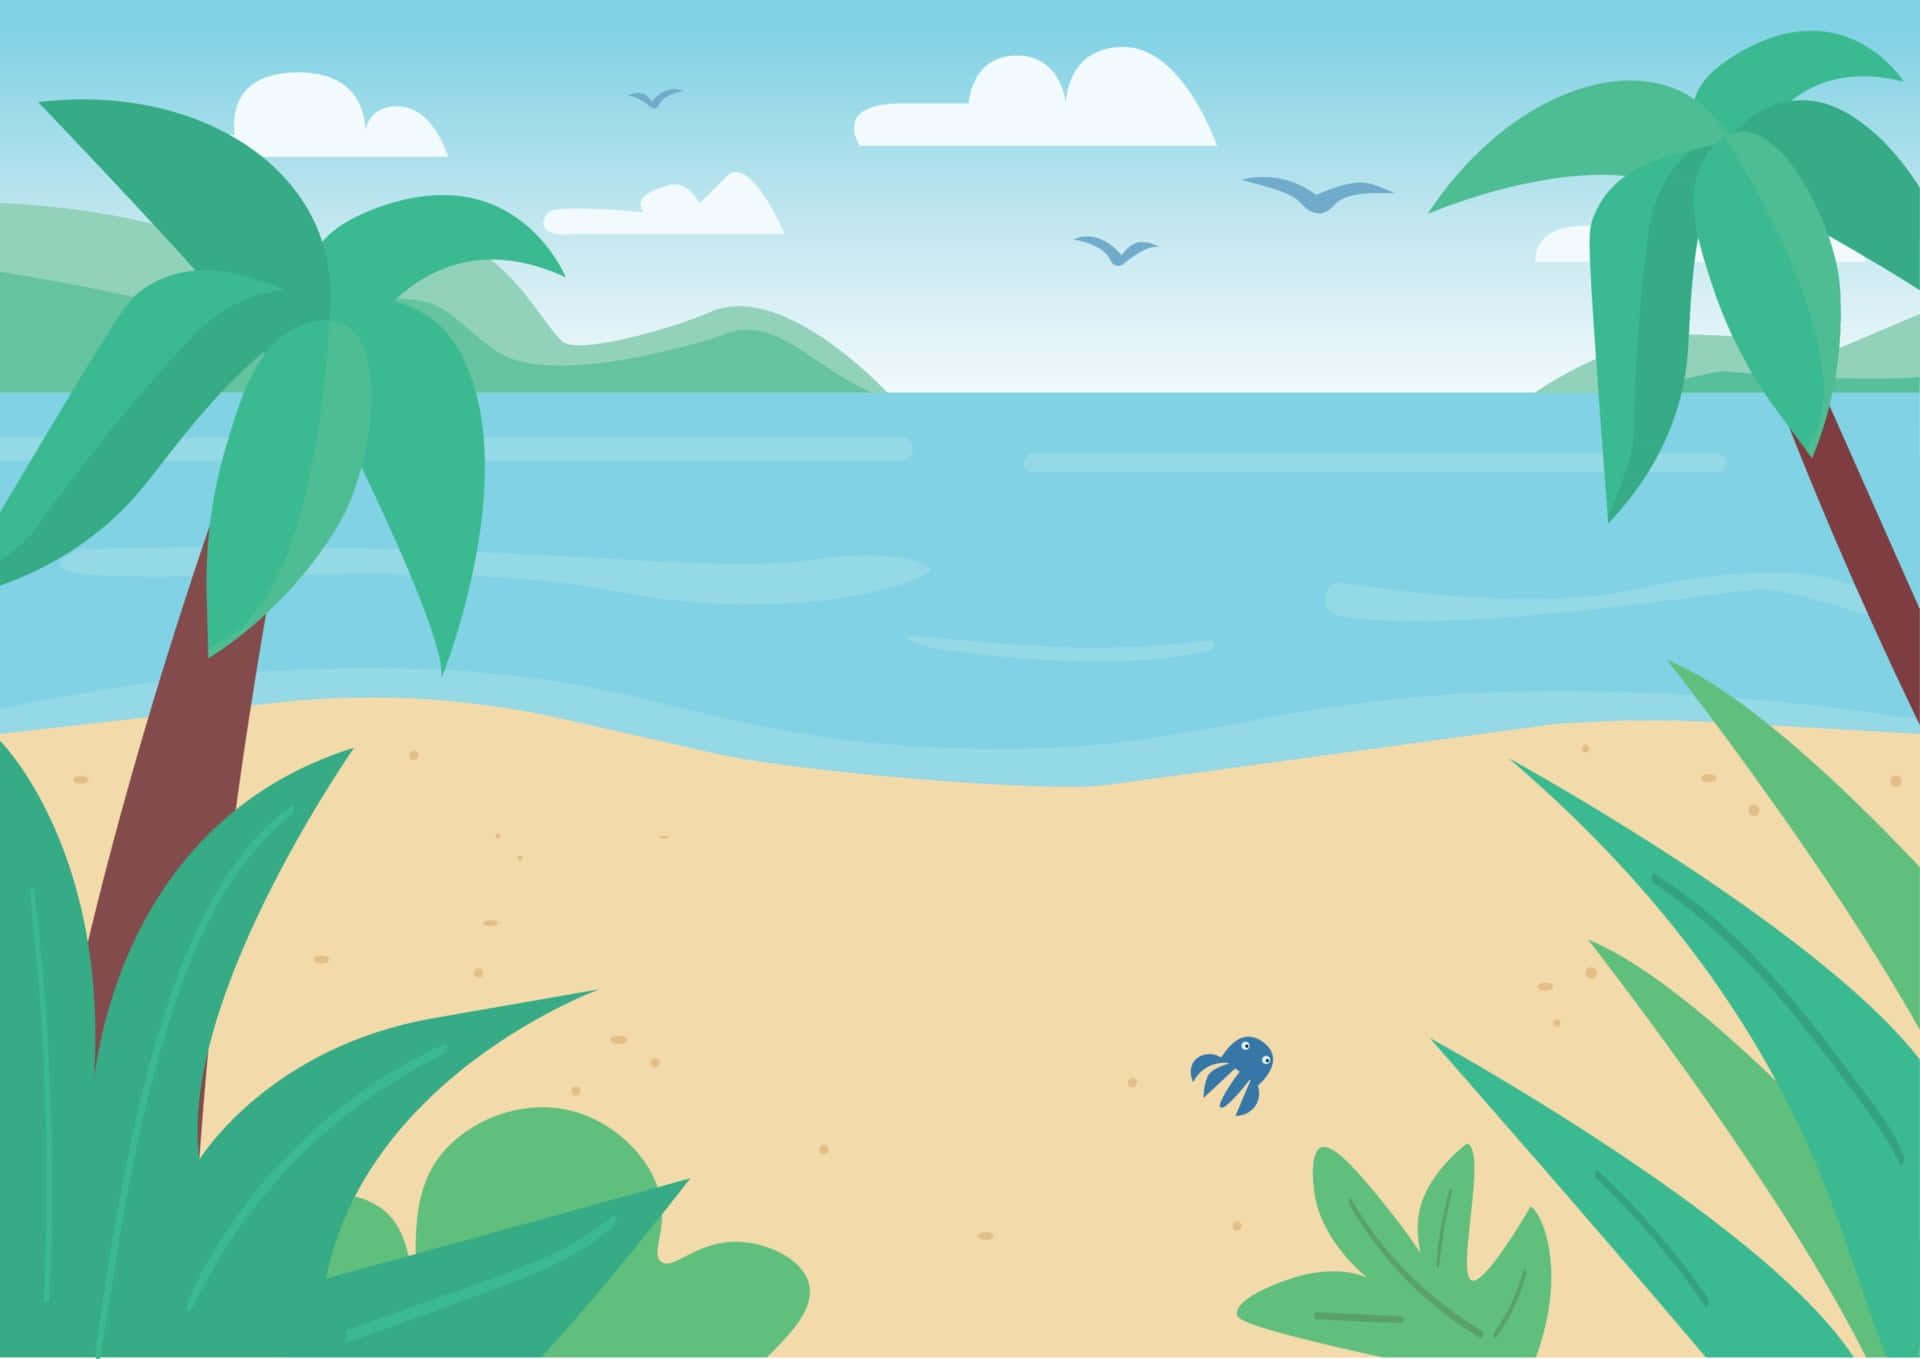 Unailustración De Dibujos Animados De Una Escena De Playa Con Palmeras Y Mar